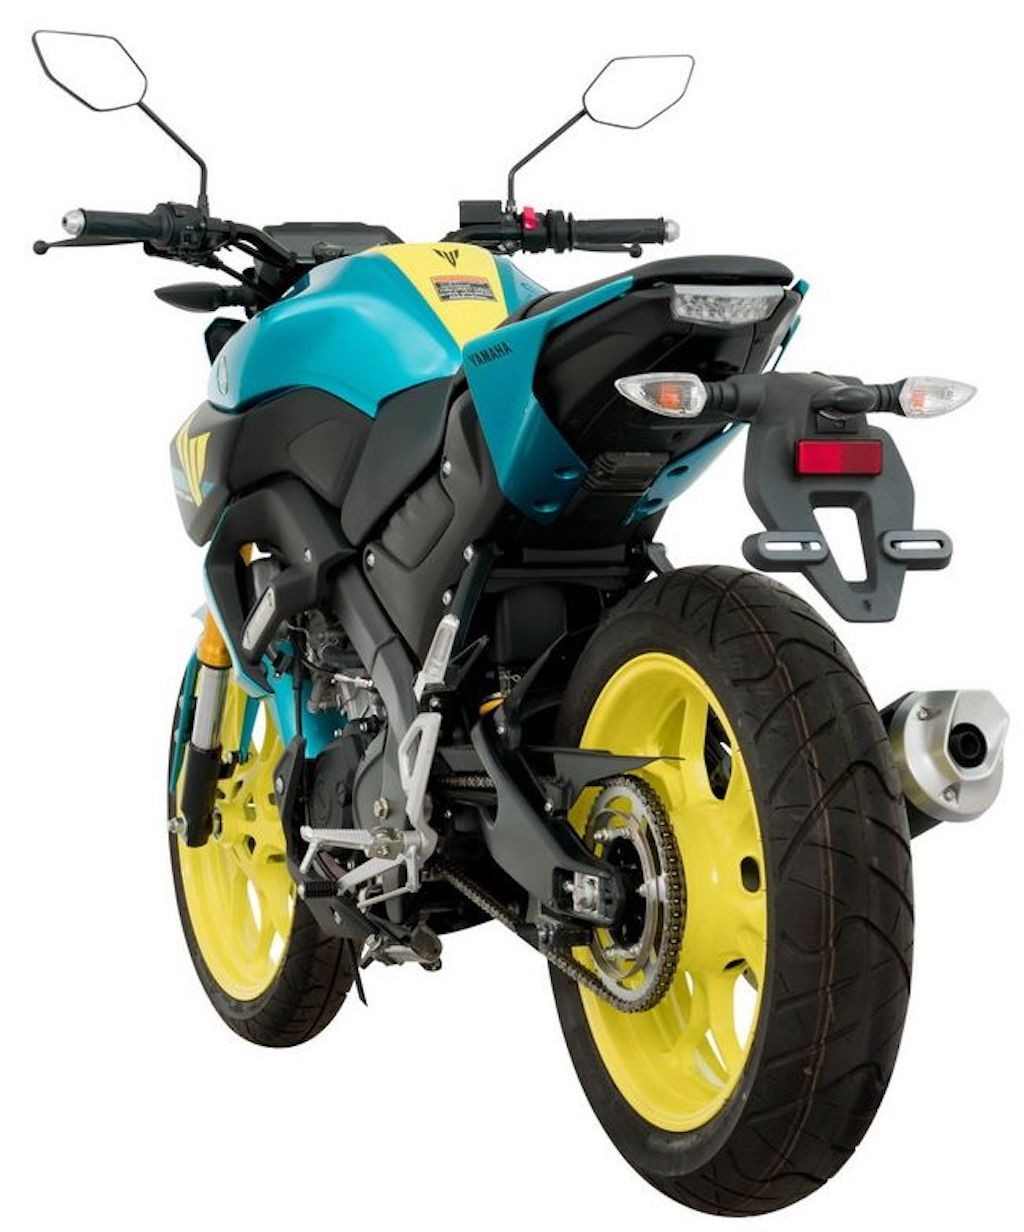 Naked bike Yamaha MT-15 có bản đặc biệt mới, nhìn lướt qua cứ ngỡ đàn anh MT-09 ảnh 3